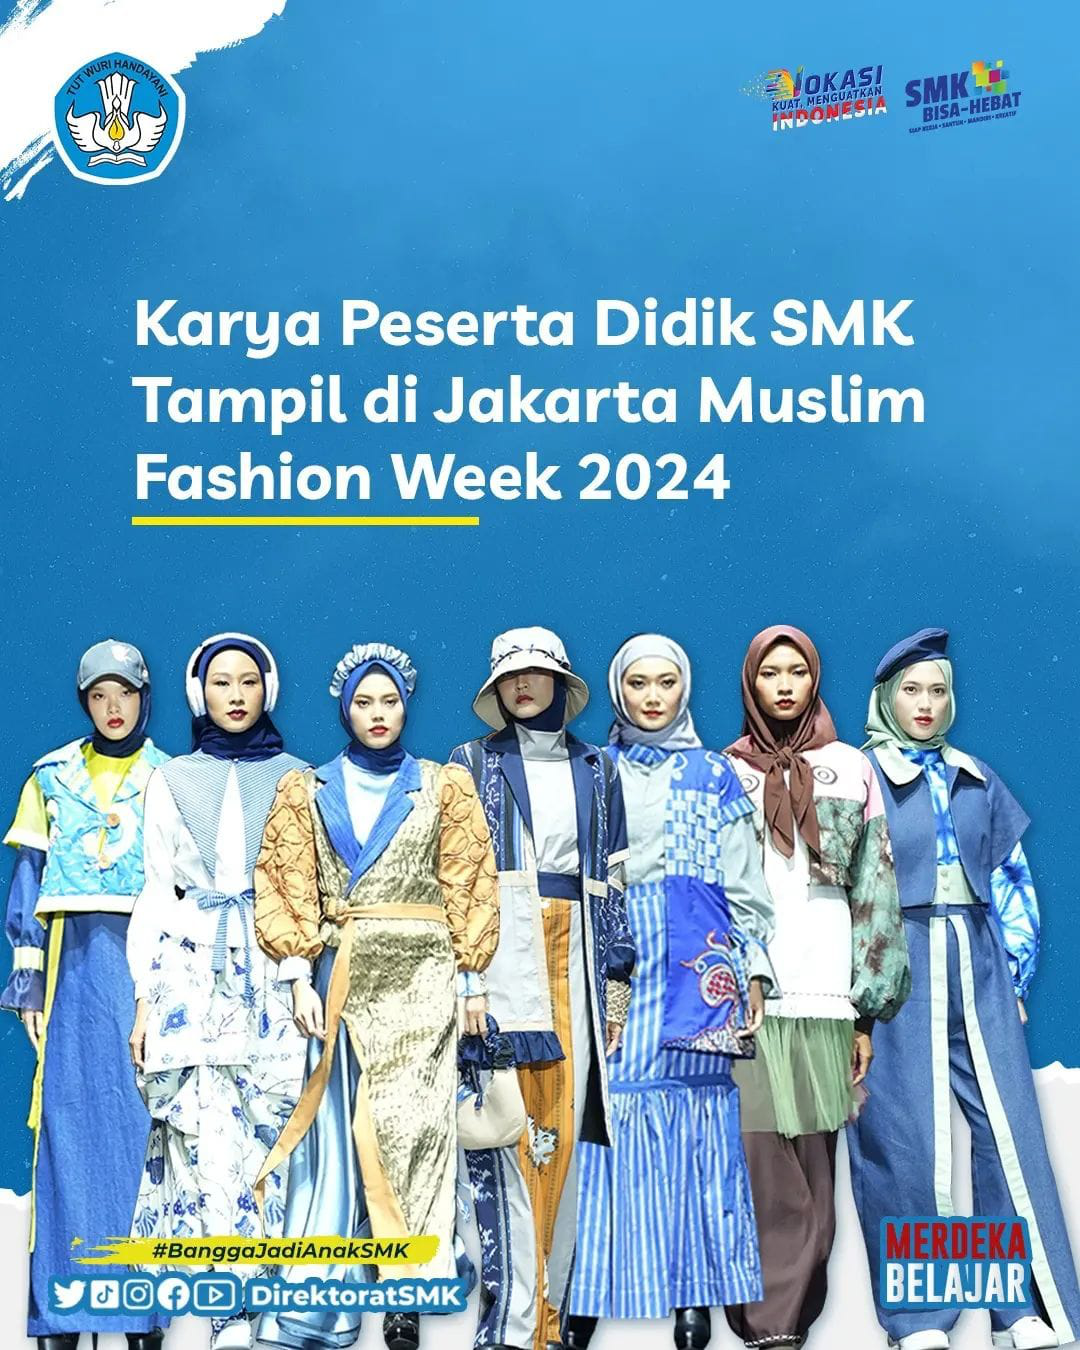 Karya Peserta Didik SMK Tampil di Jakarta Muslim Fashion Week 2024